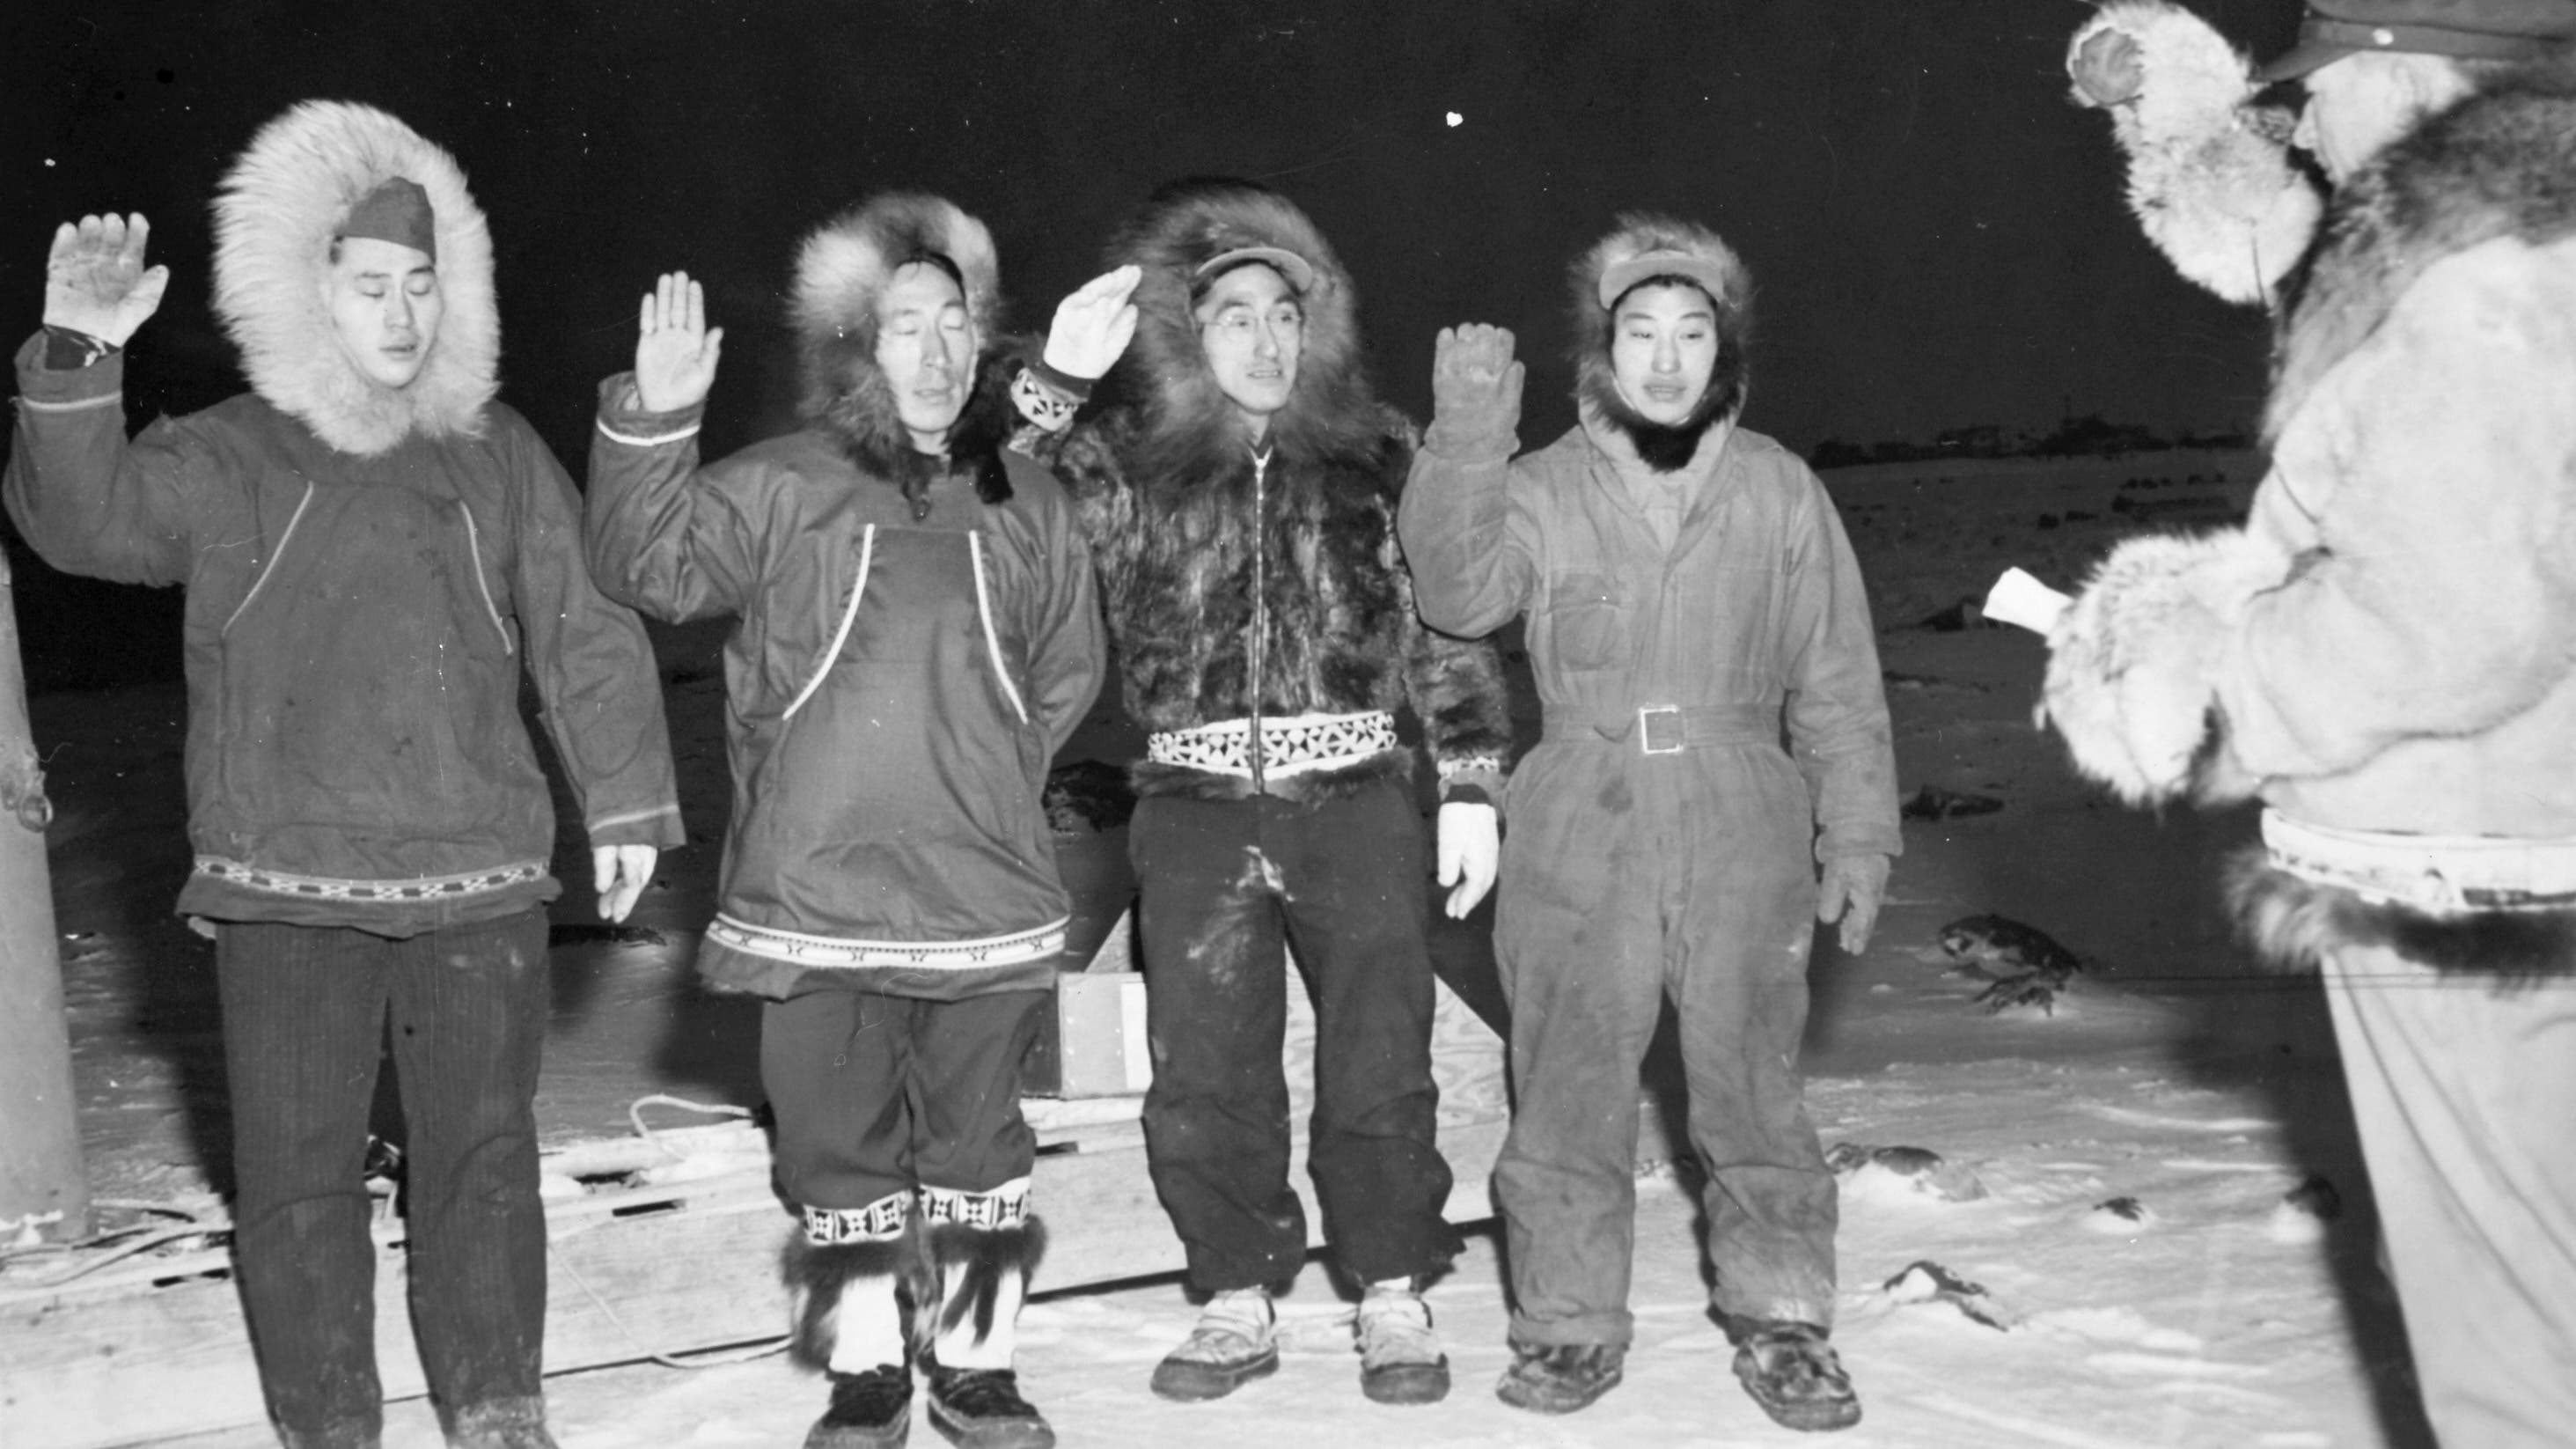 Four Alaska Territorial Guardsmen being sworn in for an assignment in Barrow, Alaska.